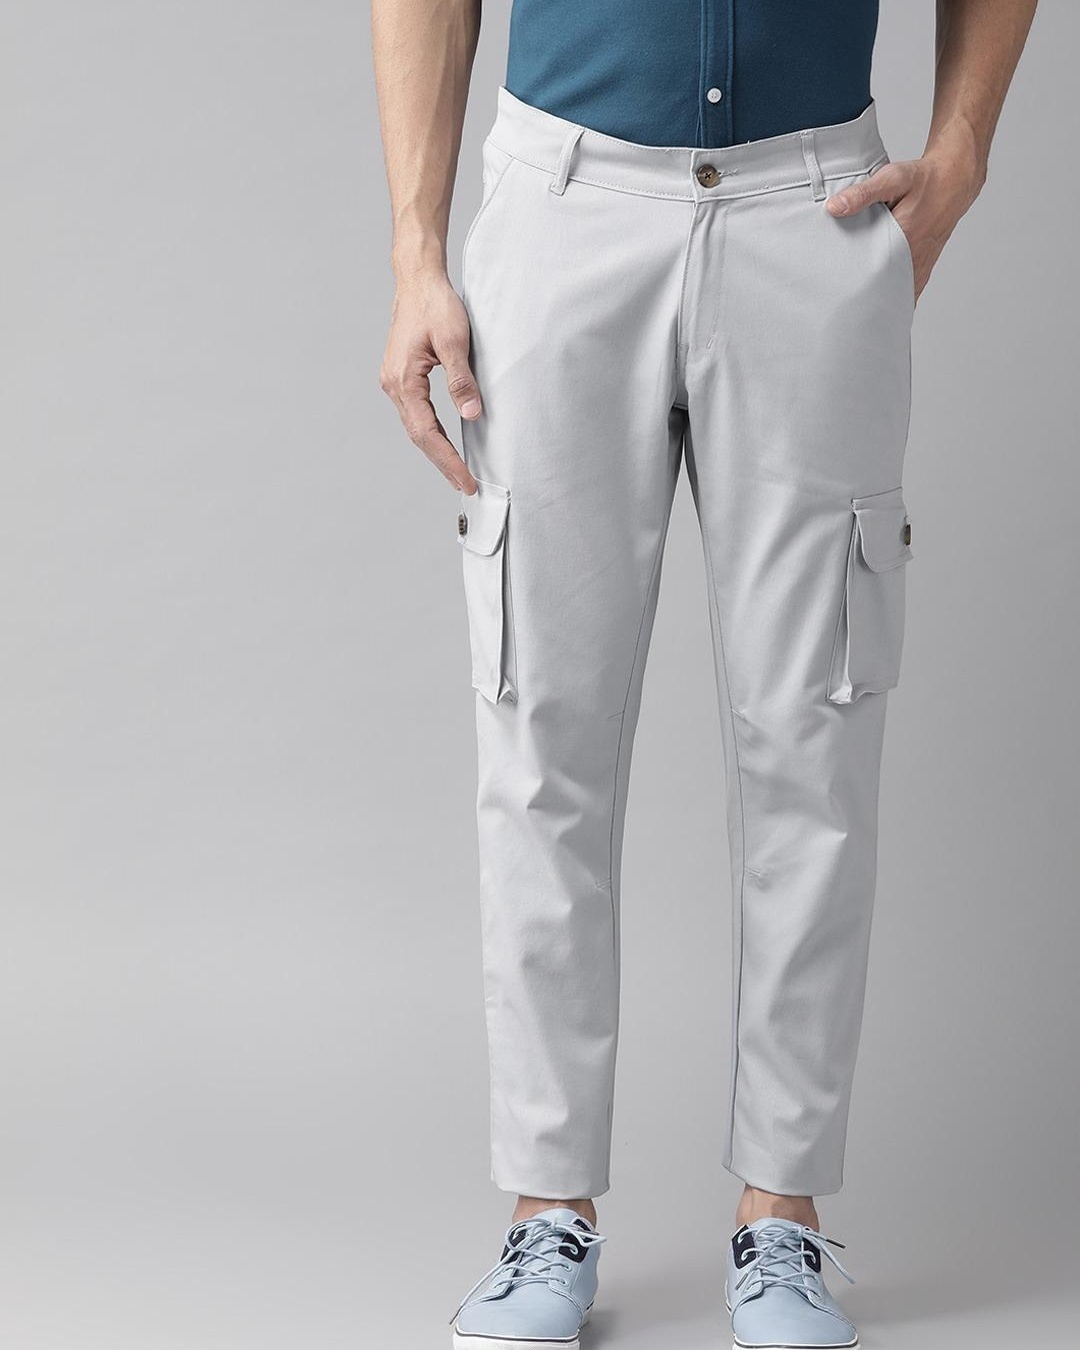 Buy Mens Grey Slim Fit Cargo Trousers for Men Online at Bewakoof